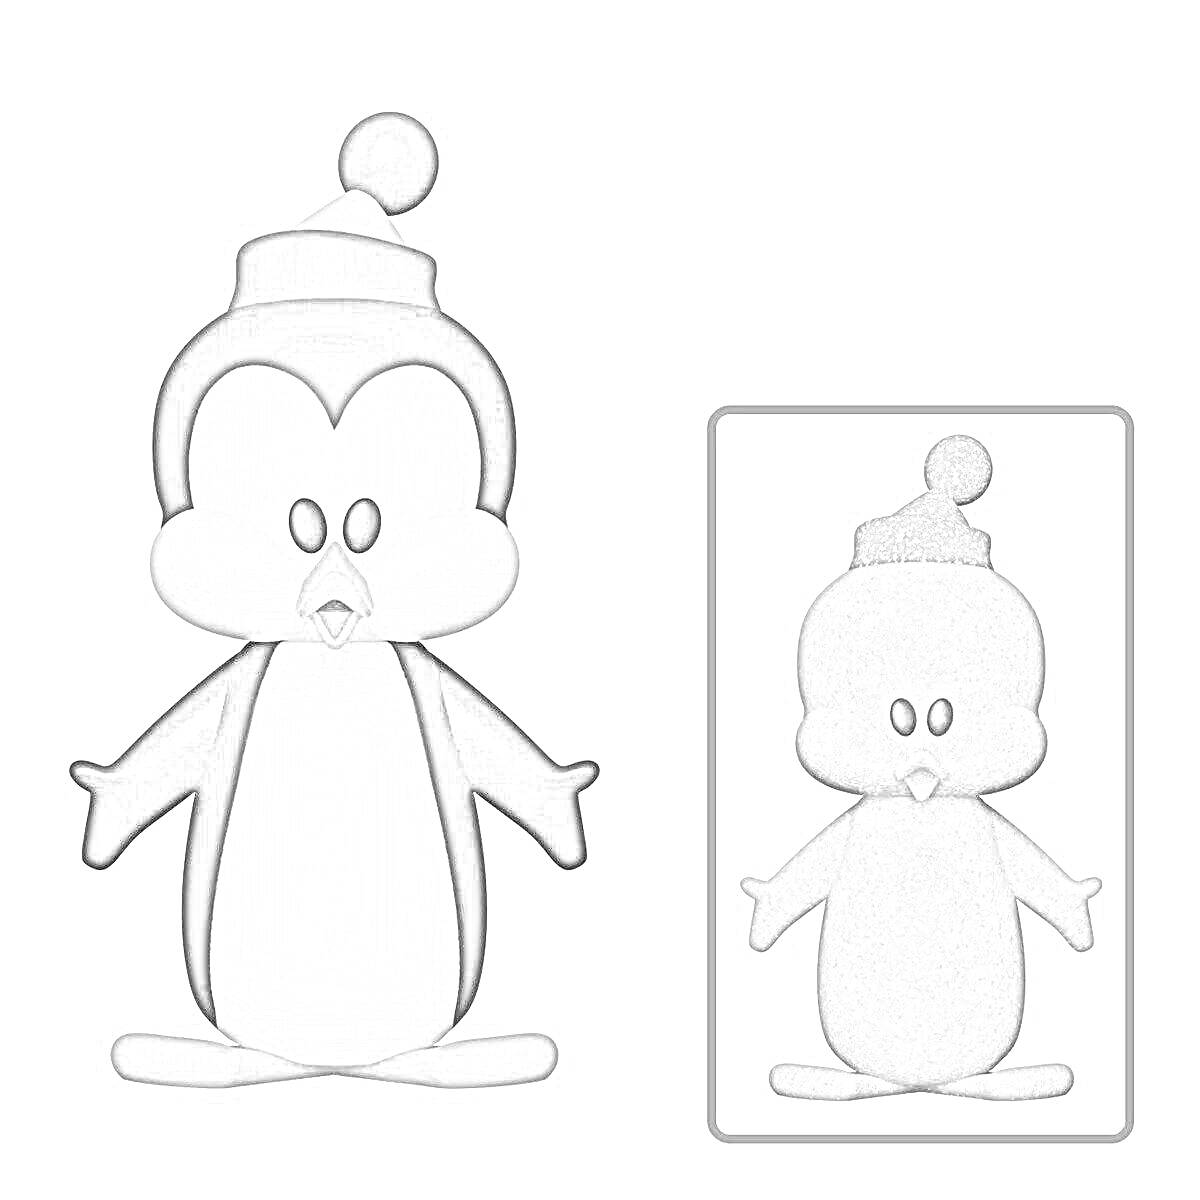 Раскраска Пингвин в шапке с помпоном, фигура с обводкой для раскрашивания